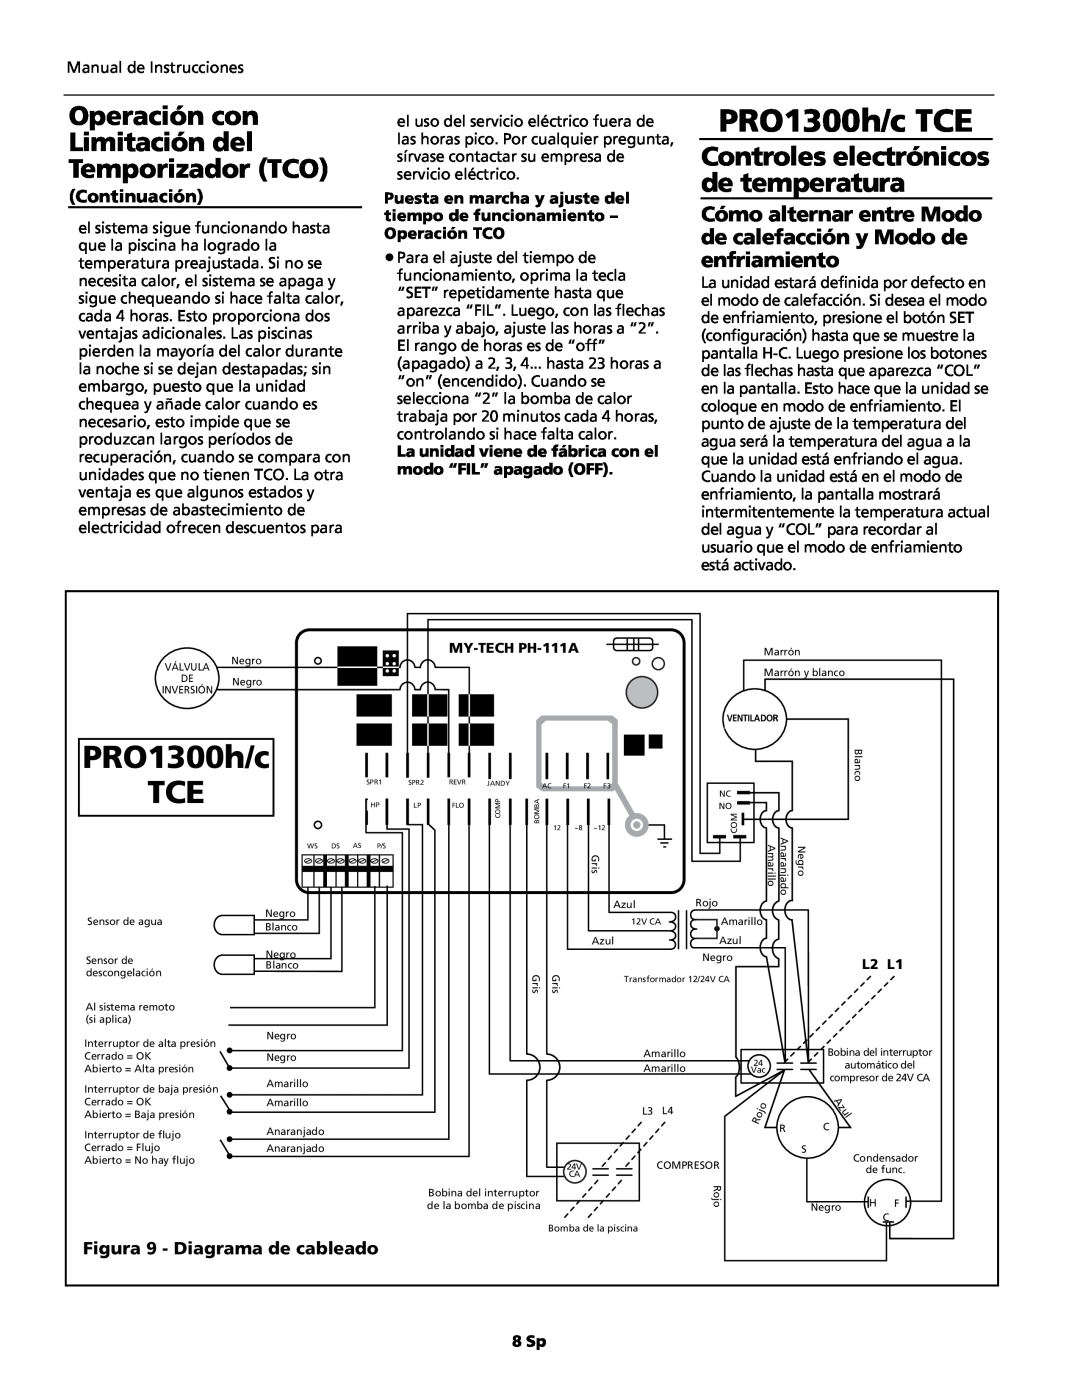 AquaPRO PRO1300h/c TCE Figura 9 - Diagrama de cableado, Operación con Limitación del Temporizador TCO, Continuación, 8 Sp 